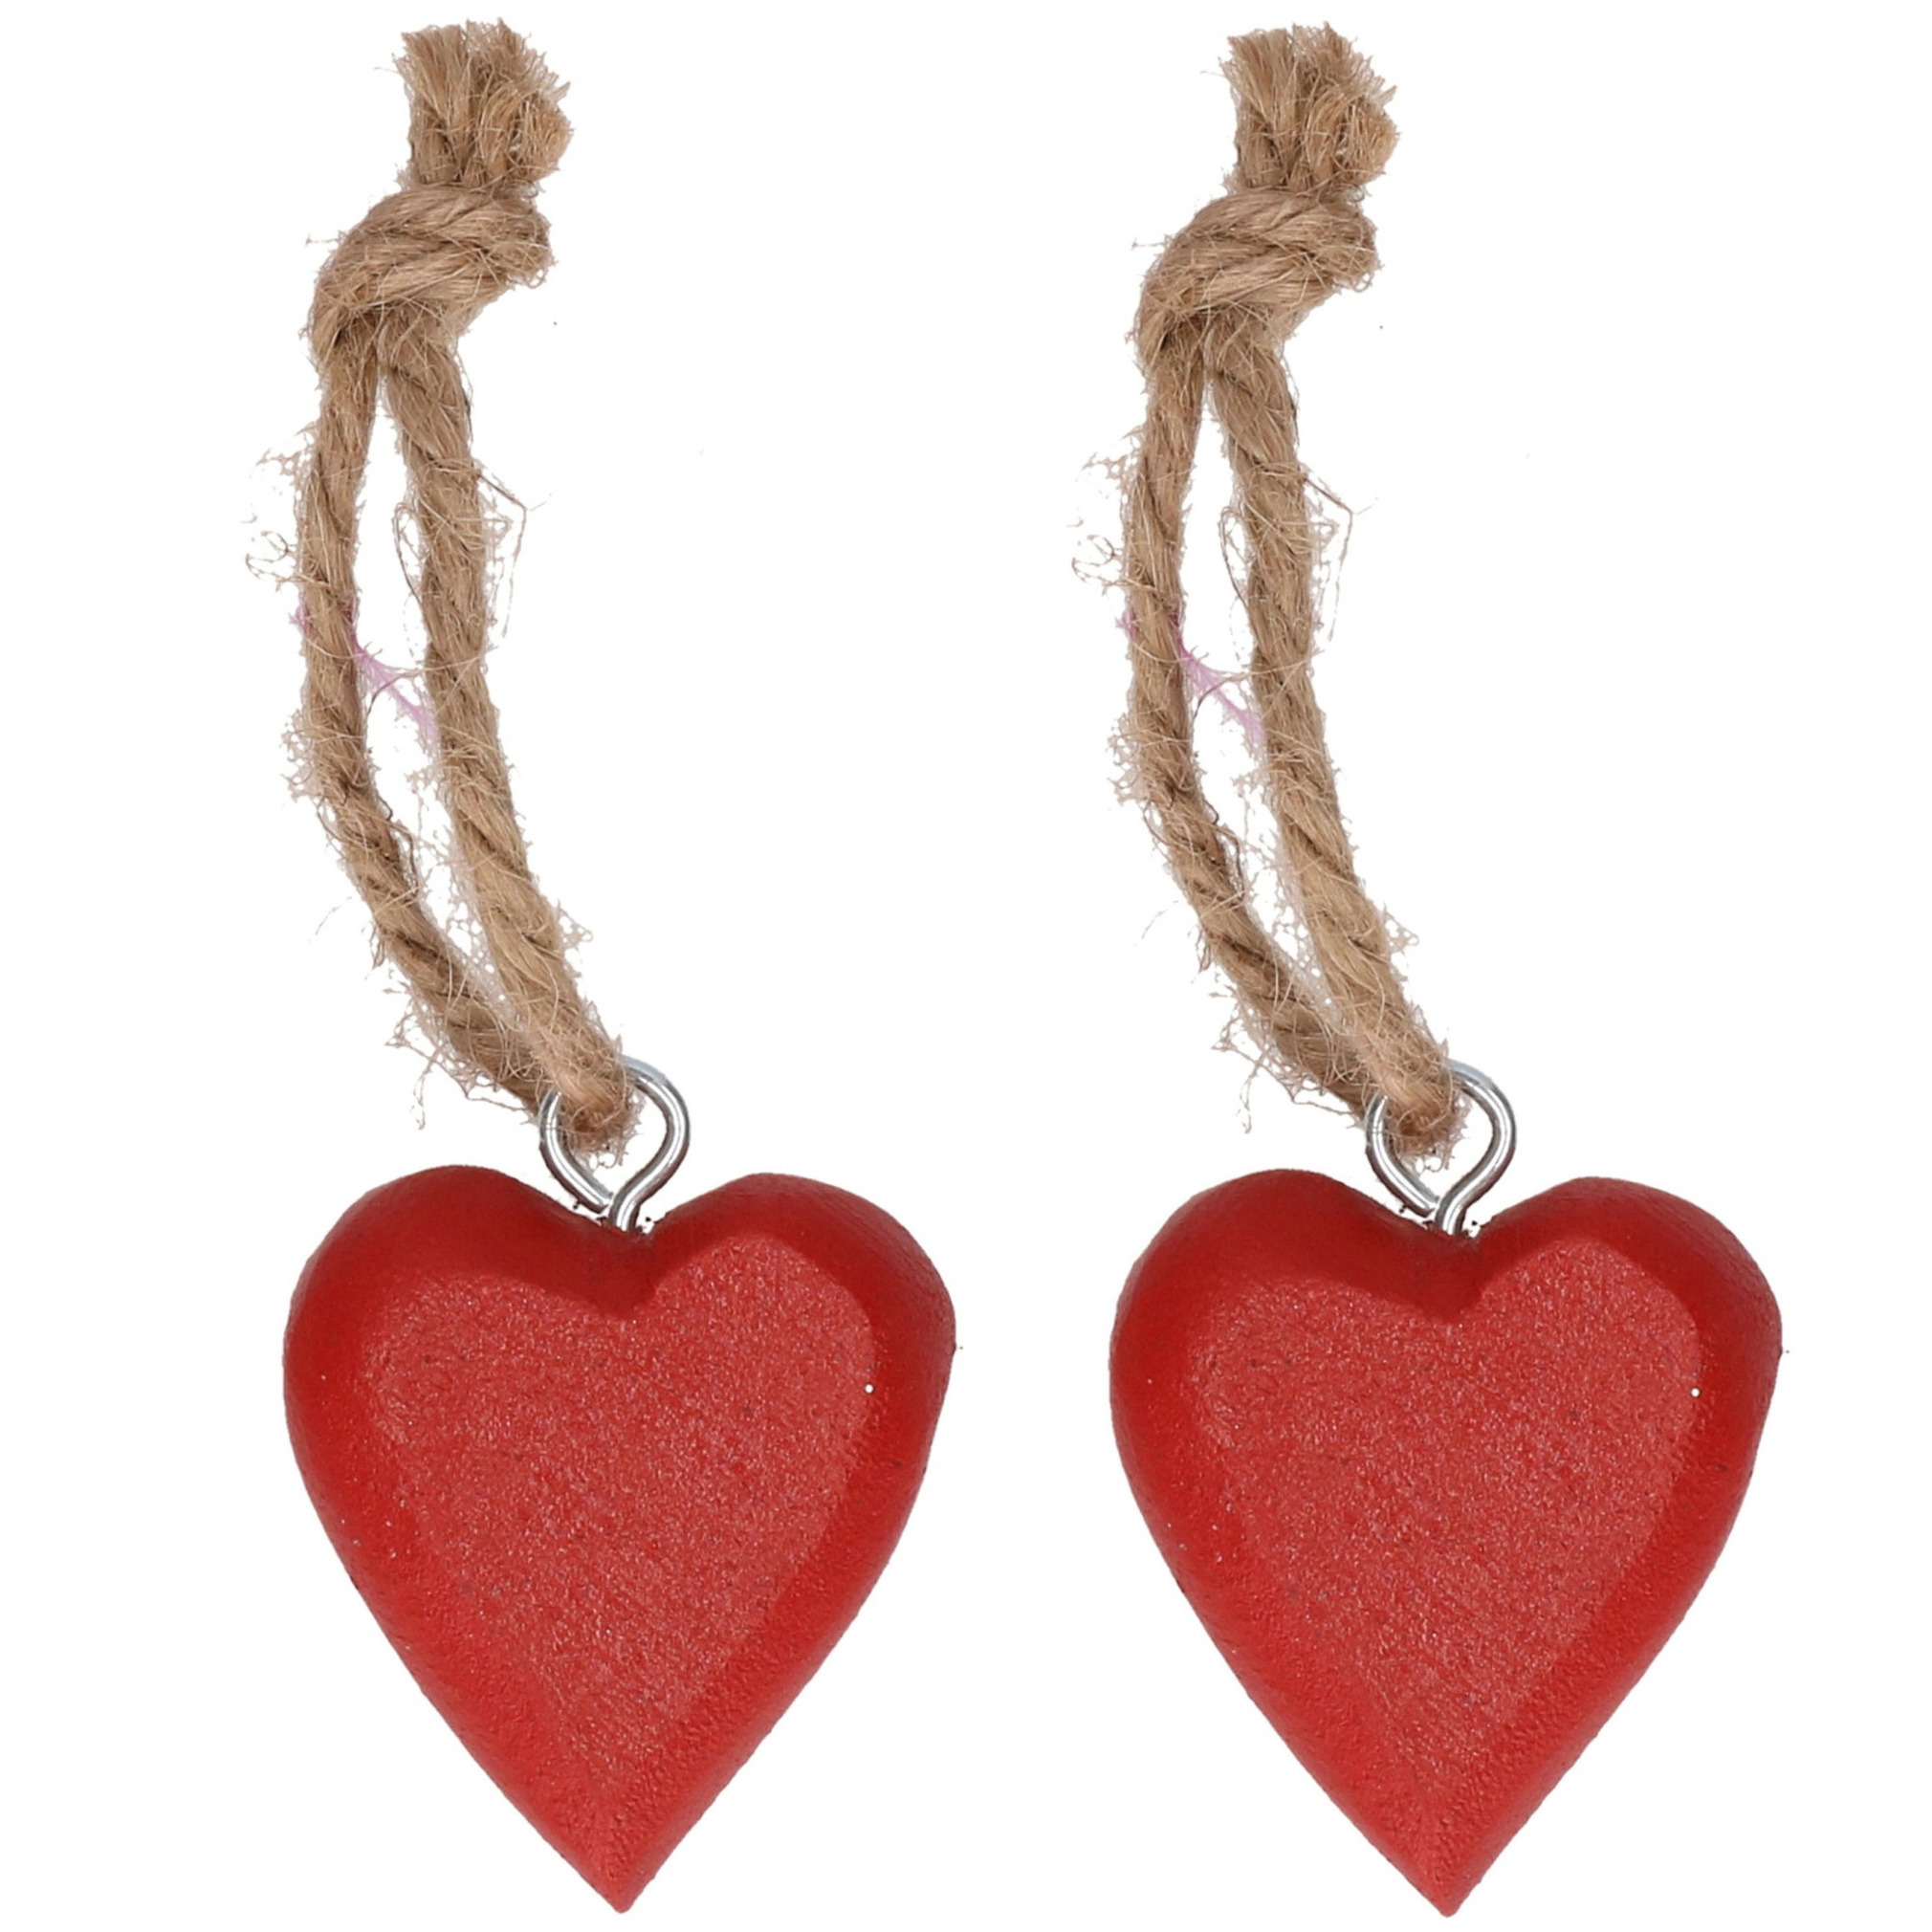 4x stuks rode hartjes hangertjes aan touwtje 5 cm